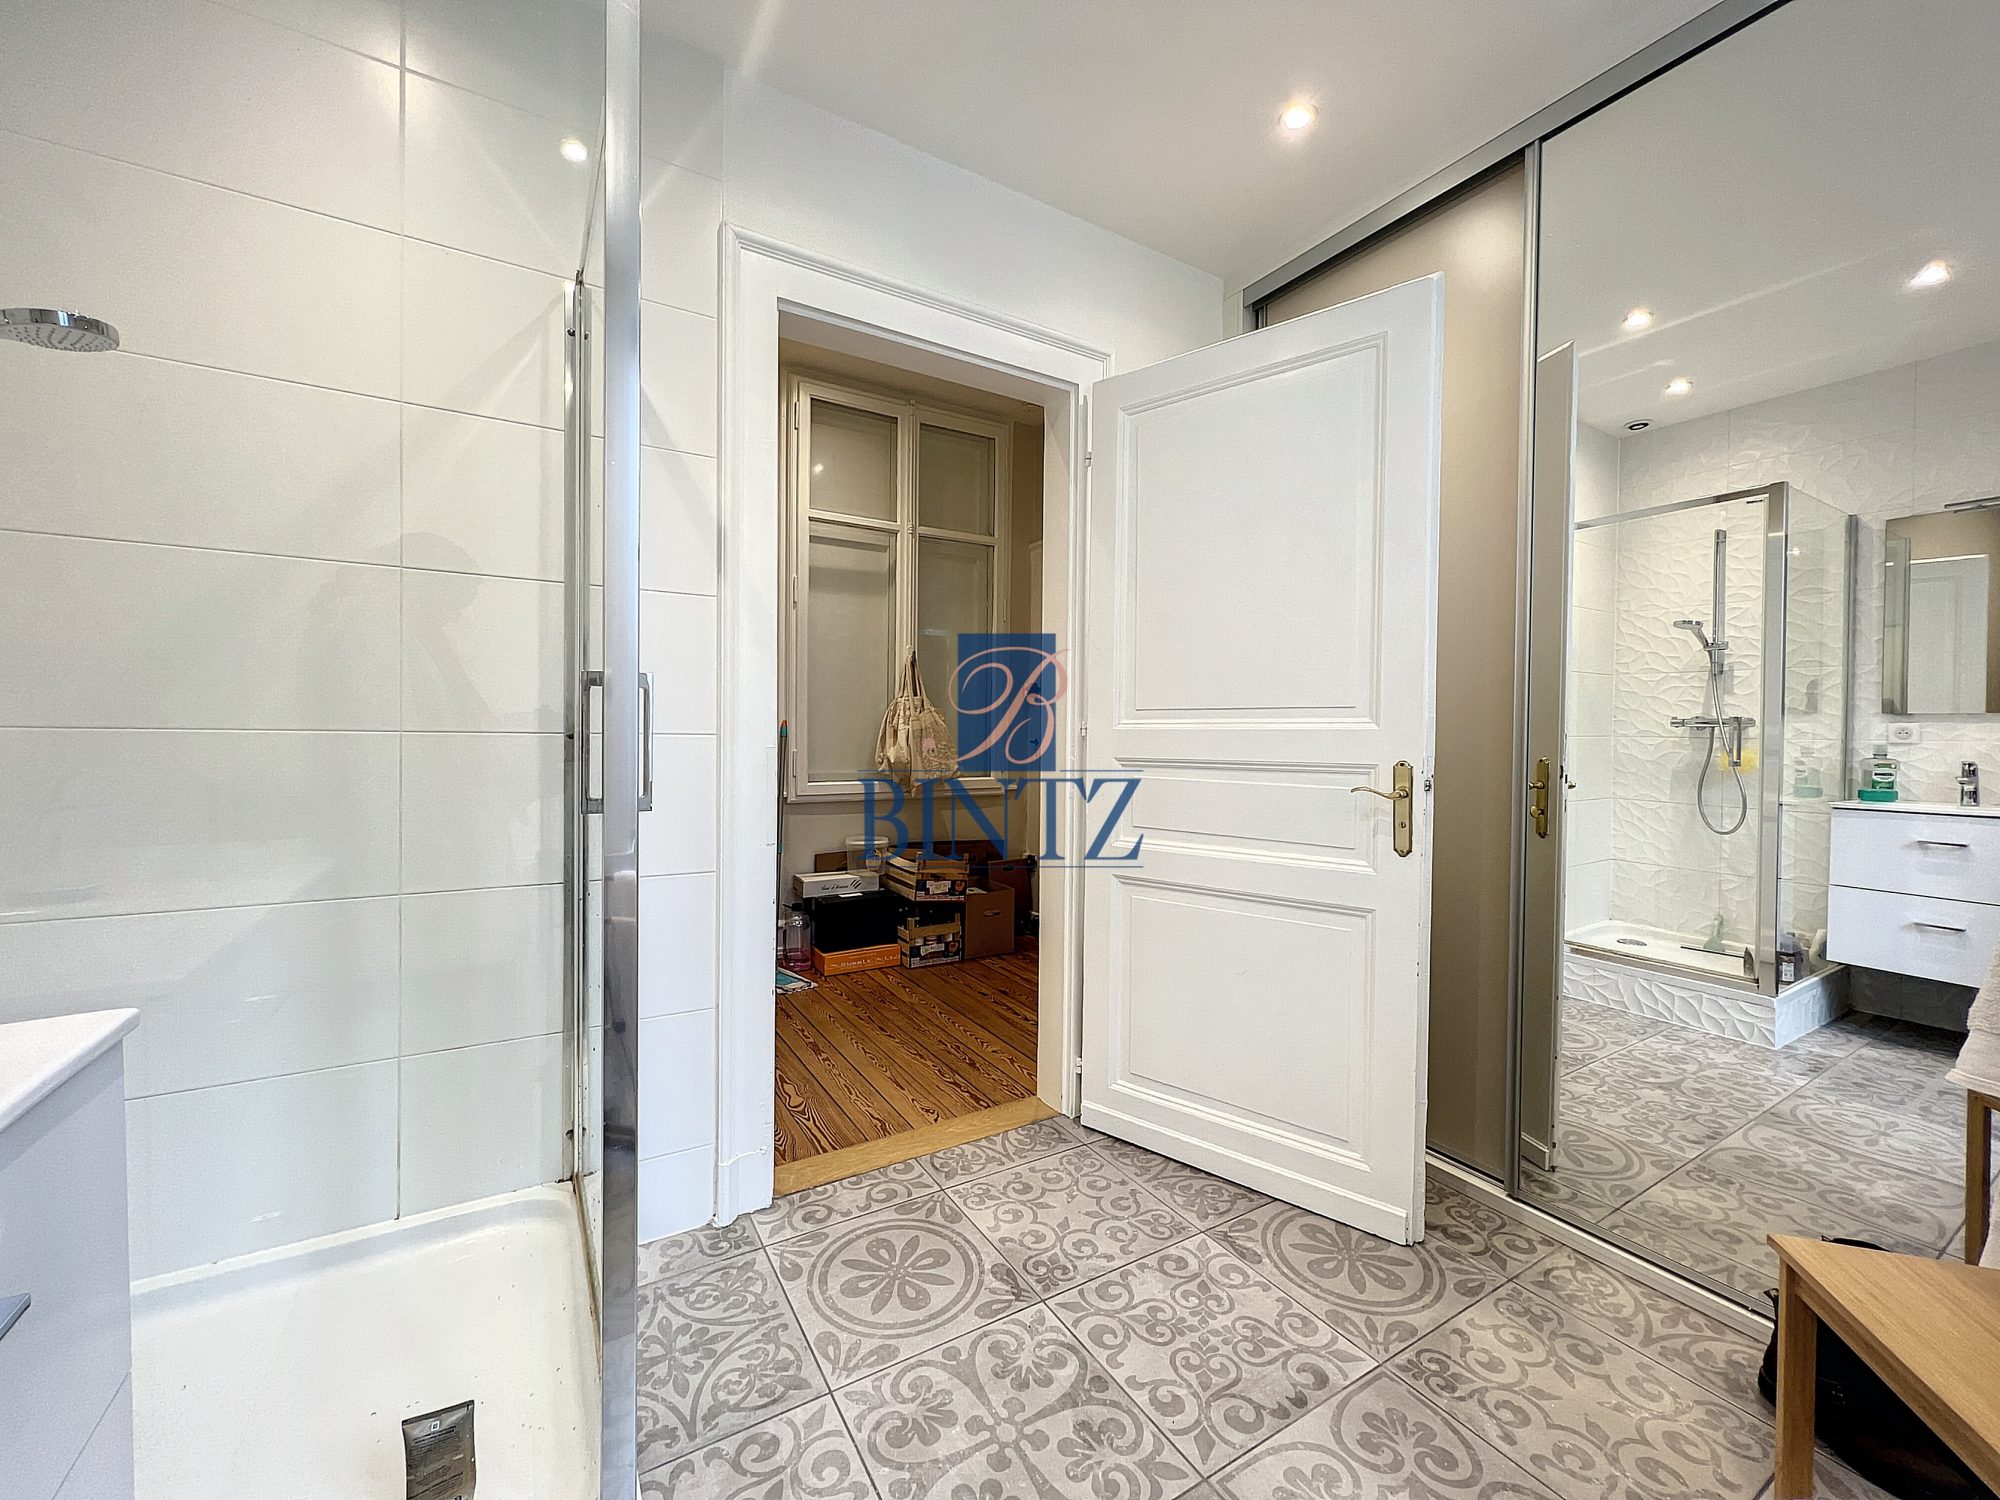 Exceptionnel 5 pièces avec balcon - location appartement Strasbourg - Bintz Immobilier - 12